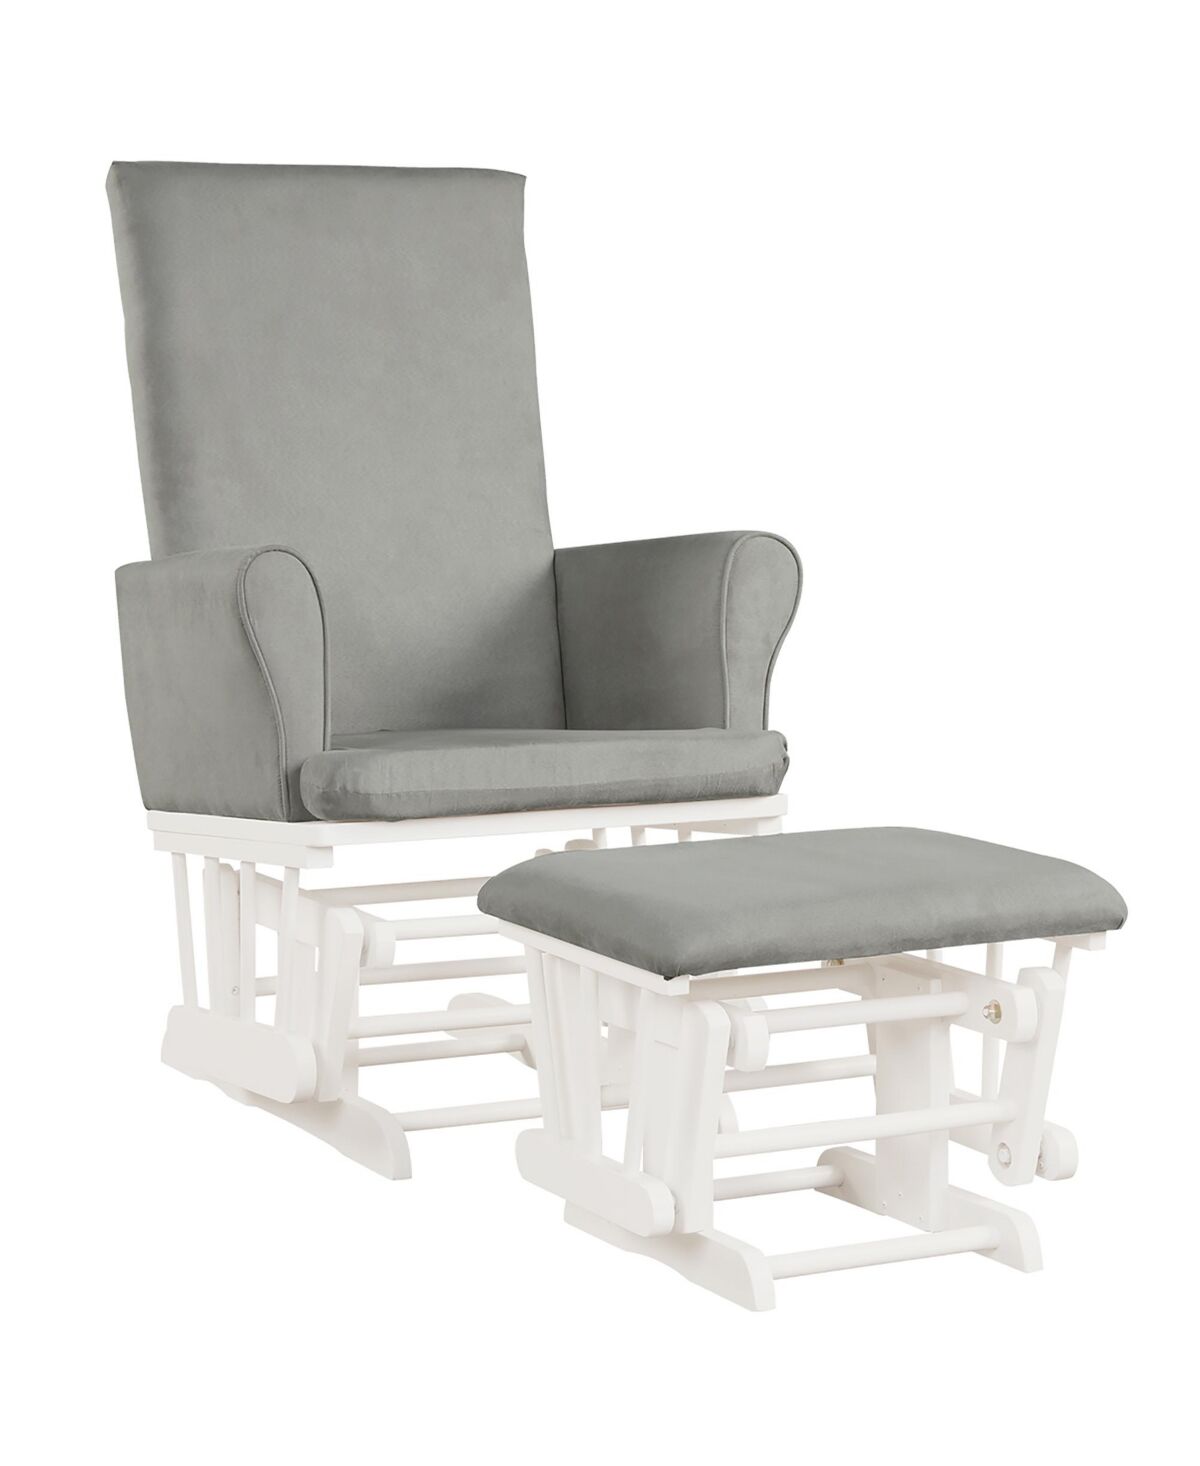 Costway Baby Nursery Relax Rocker Rocking Chair Glider & Ottoman Set w/Cushion - Grey